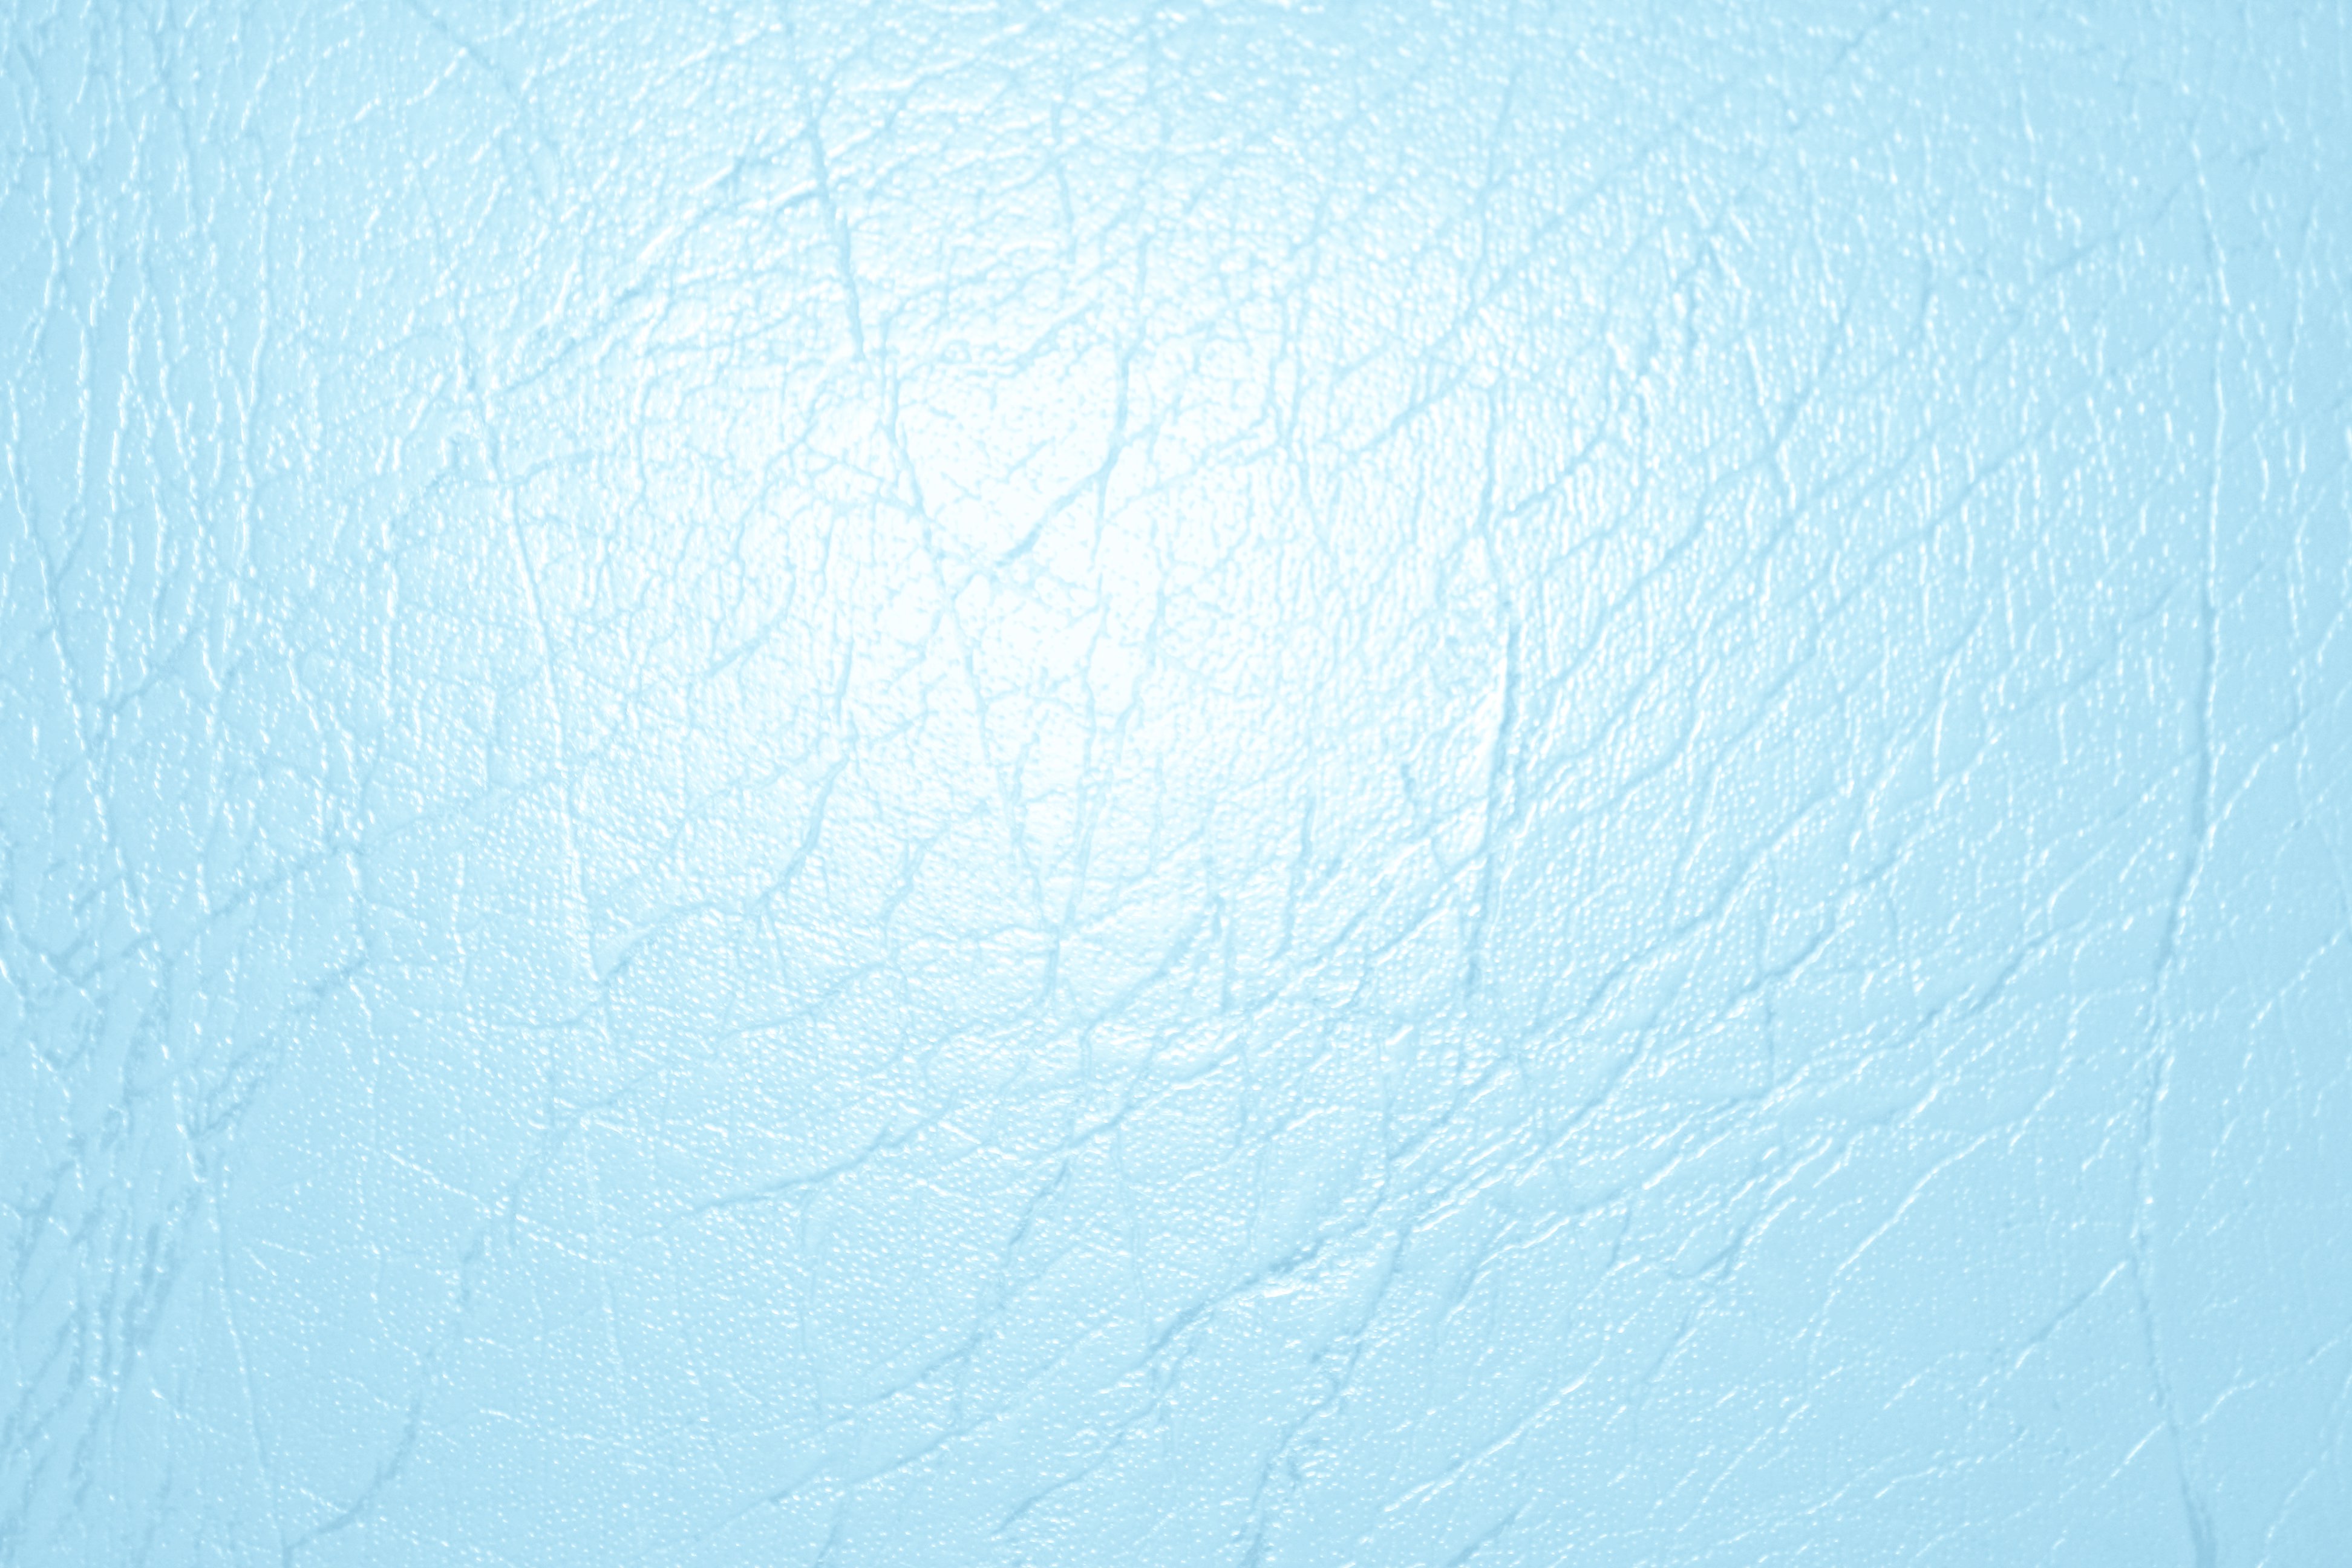 49+] Light Blue Wallpaper Images - WallpaperSafari